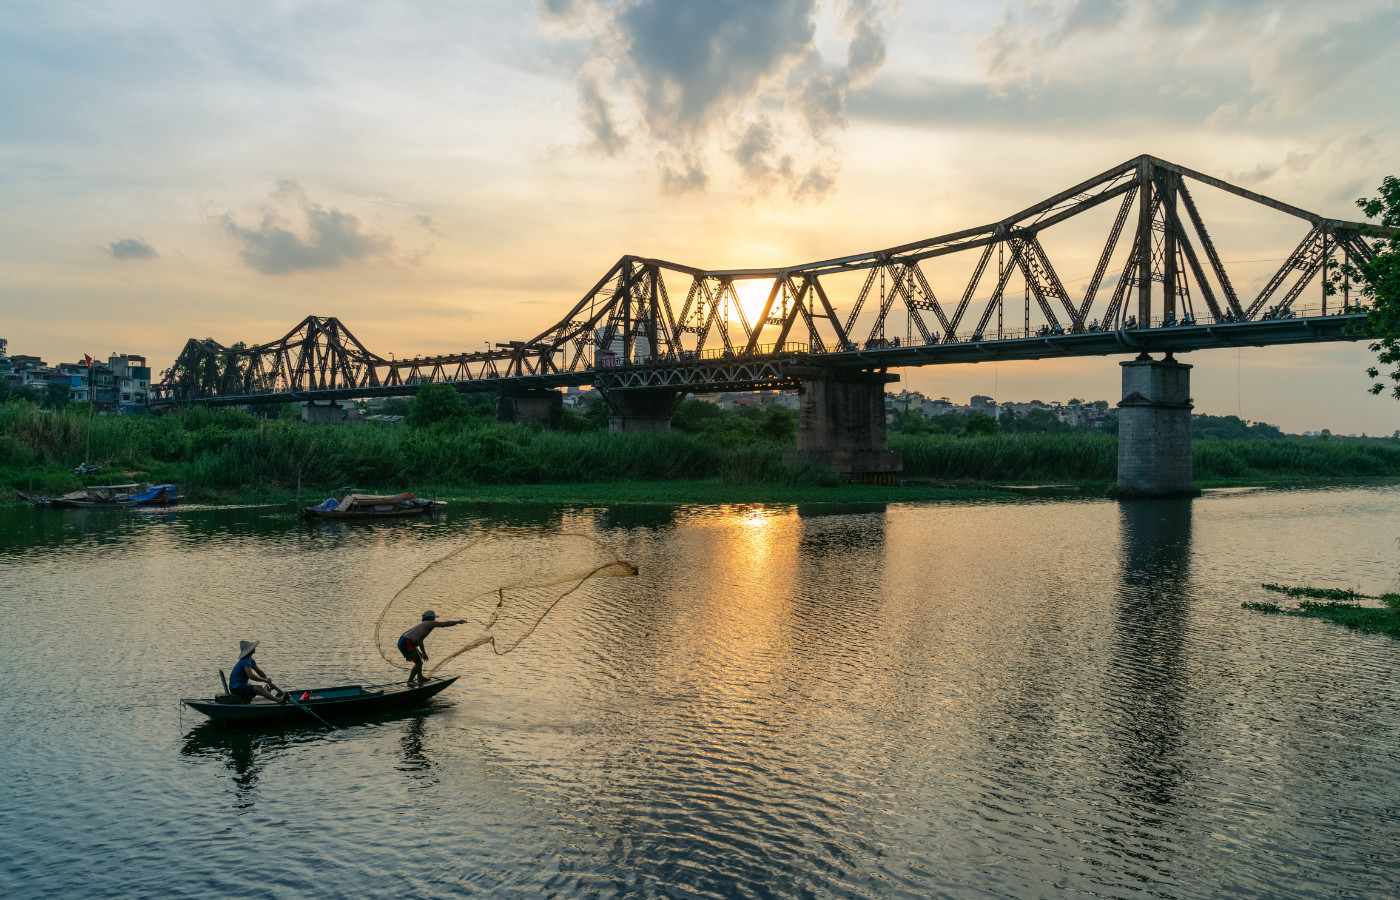 Hình ảnh cầu Long Biên trên sông Hồng đẹp